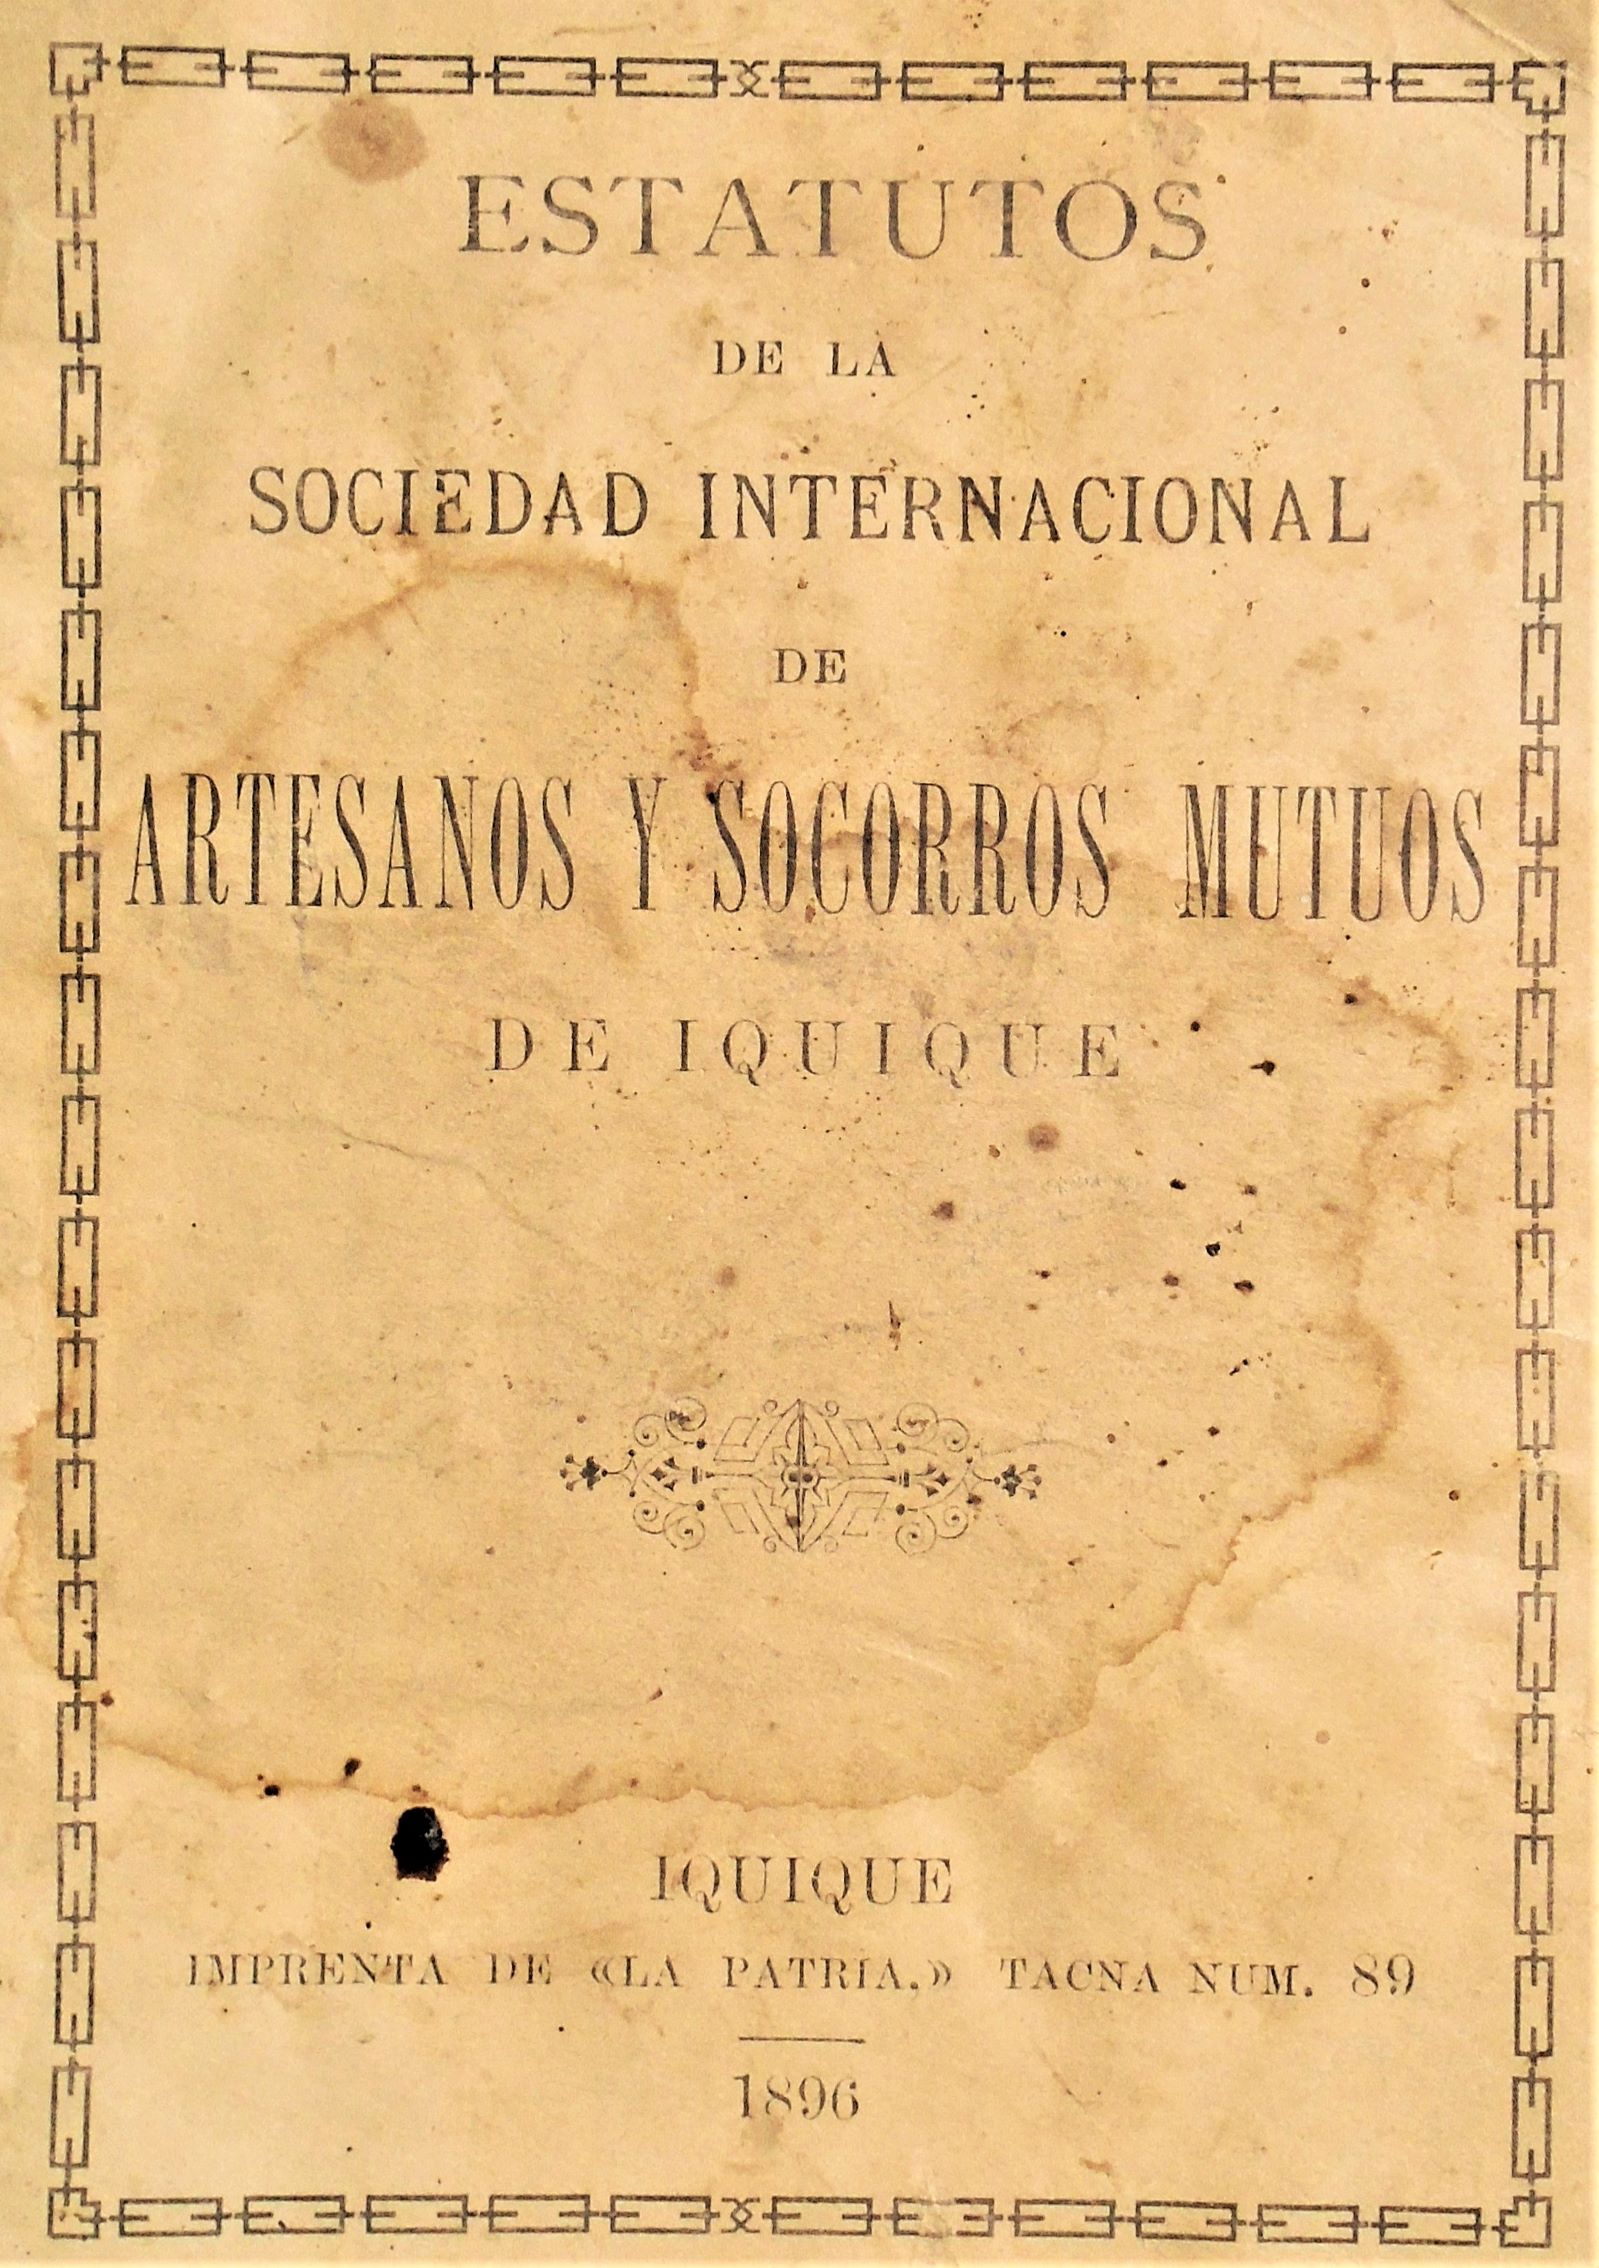 Estatutos de la sociedad internacional de artesanos y socorros mutuos de Iquique